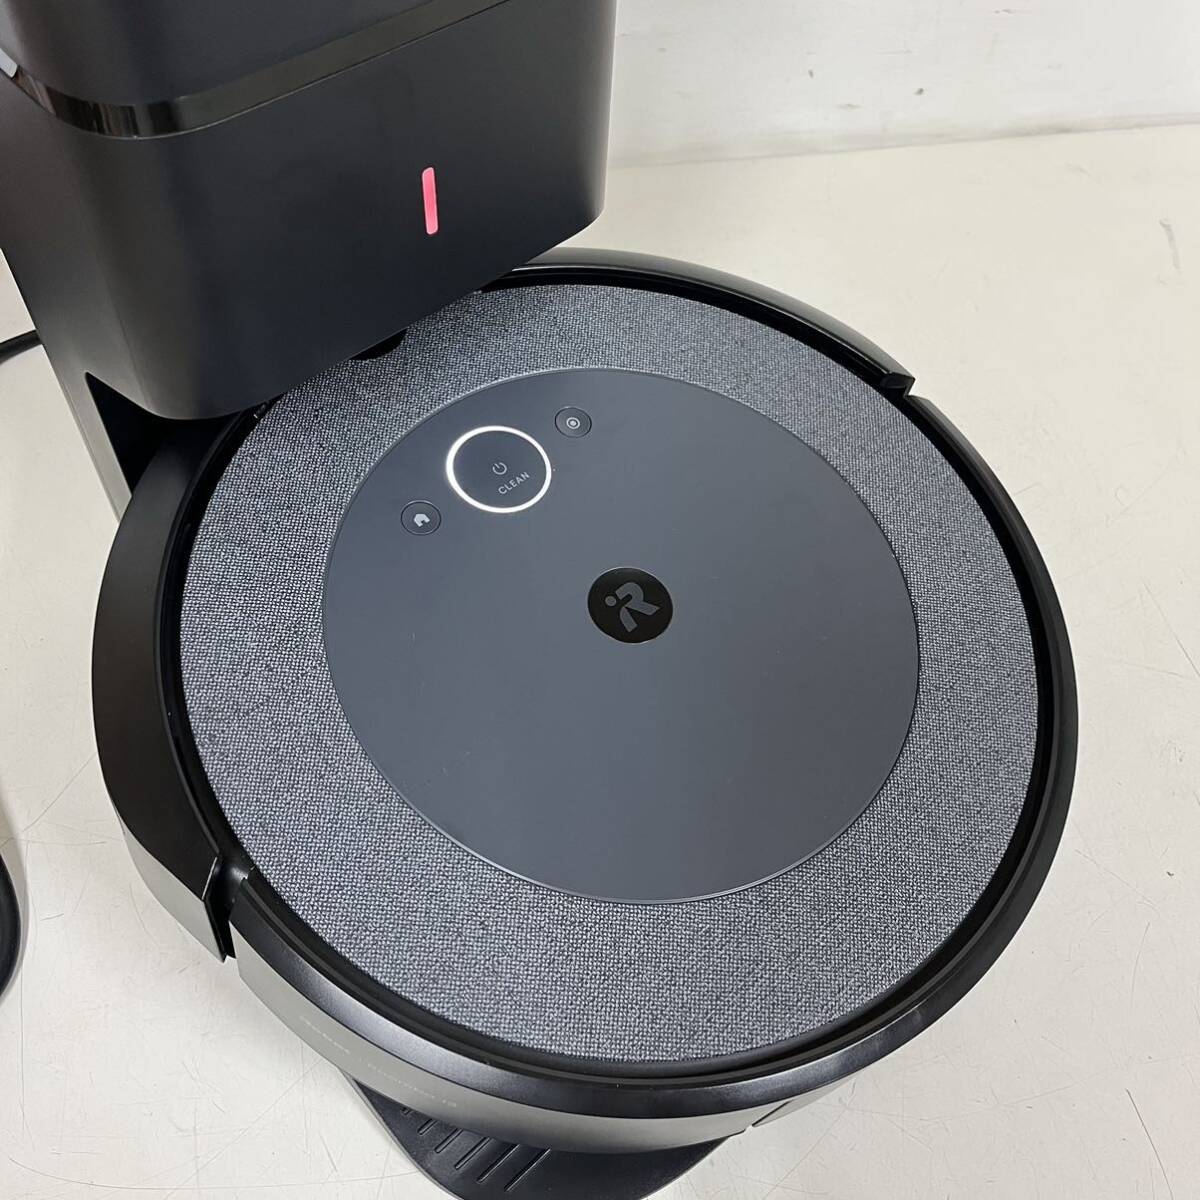 P0 новый старый товар iRobot Roomba i3+ I робот roomba clean основа имеется автоматика мусор сбор машина робот пылесос оригинальная коробка есть 